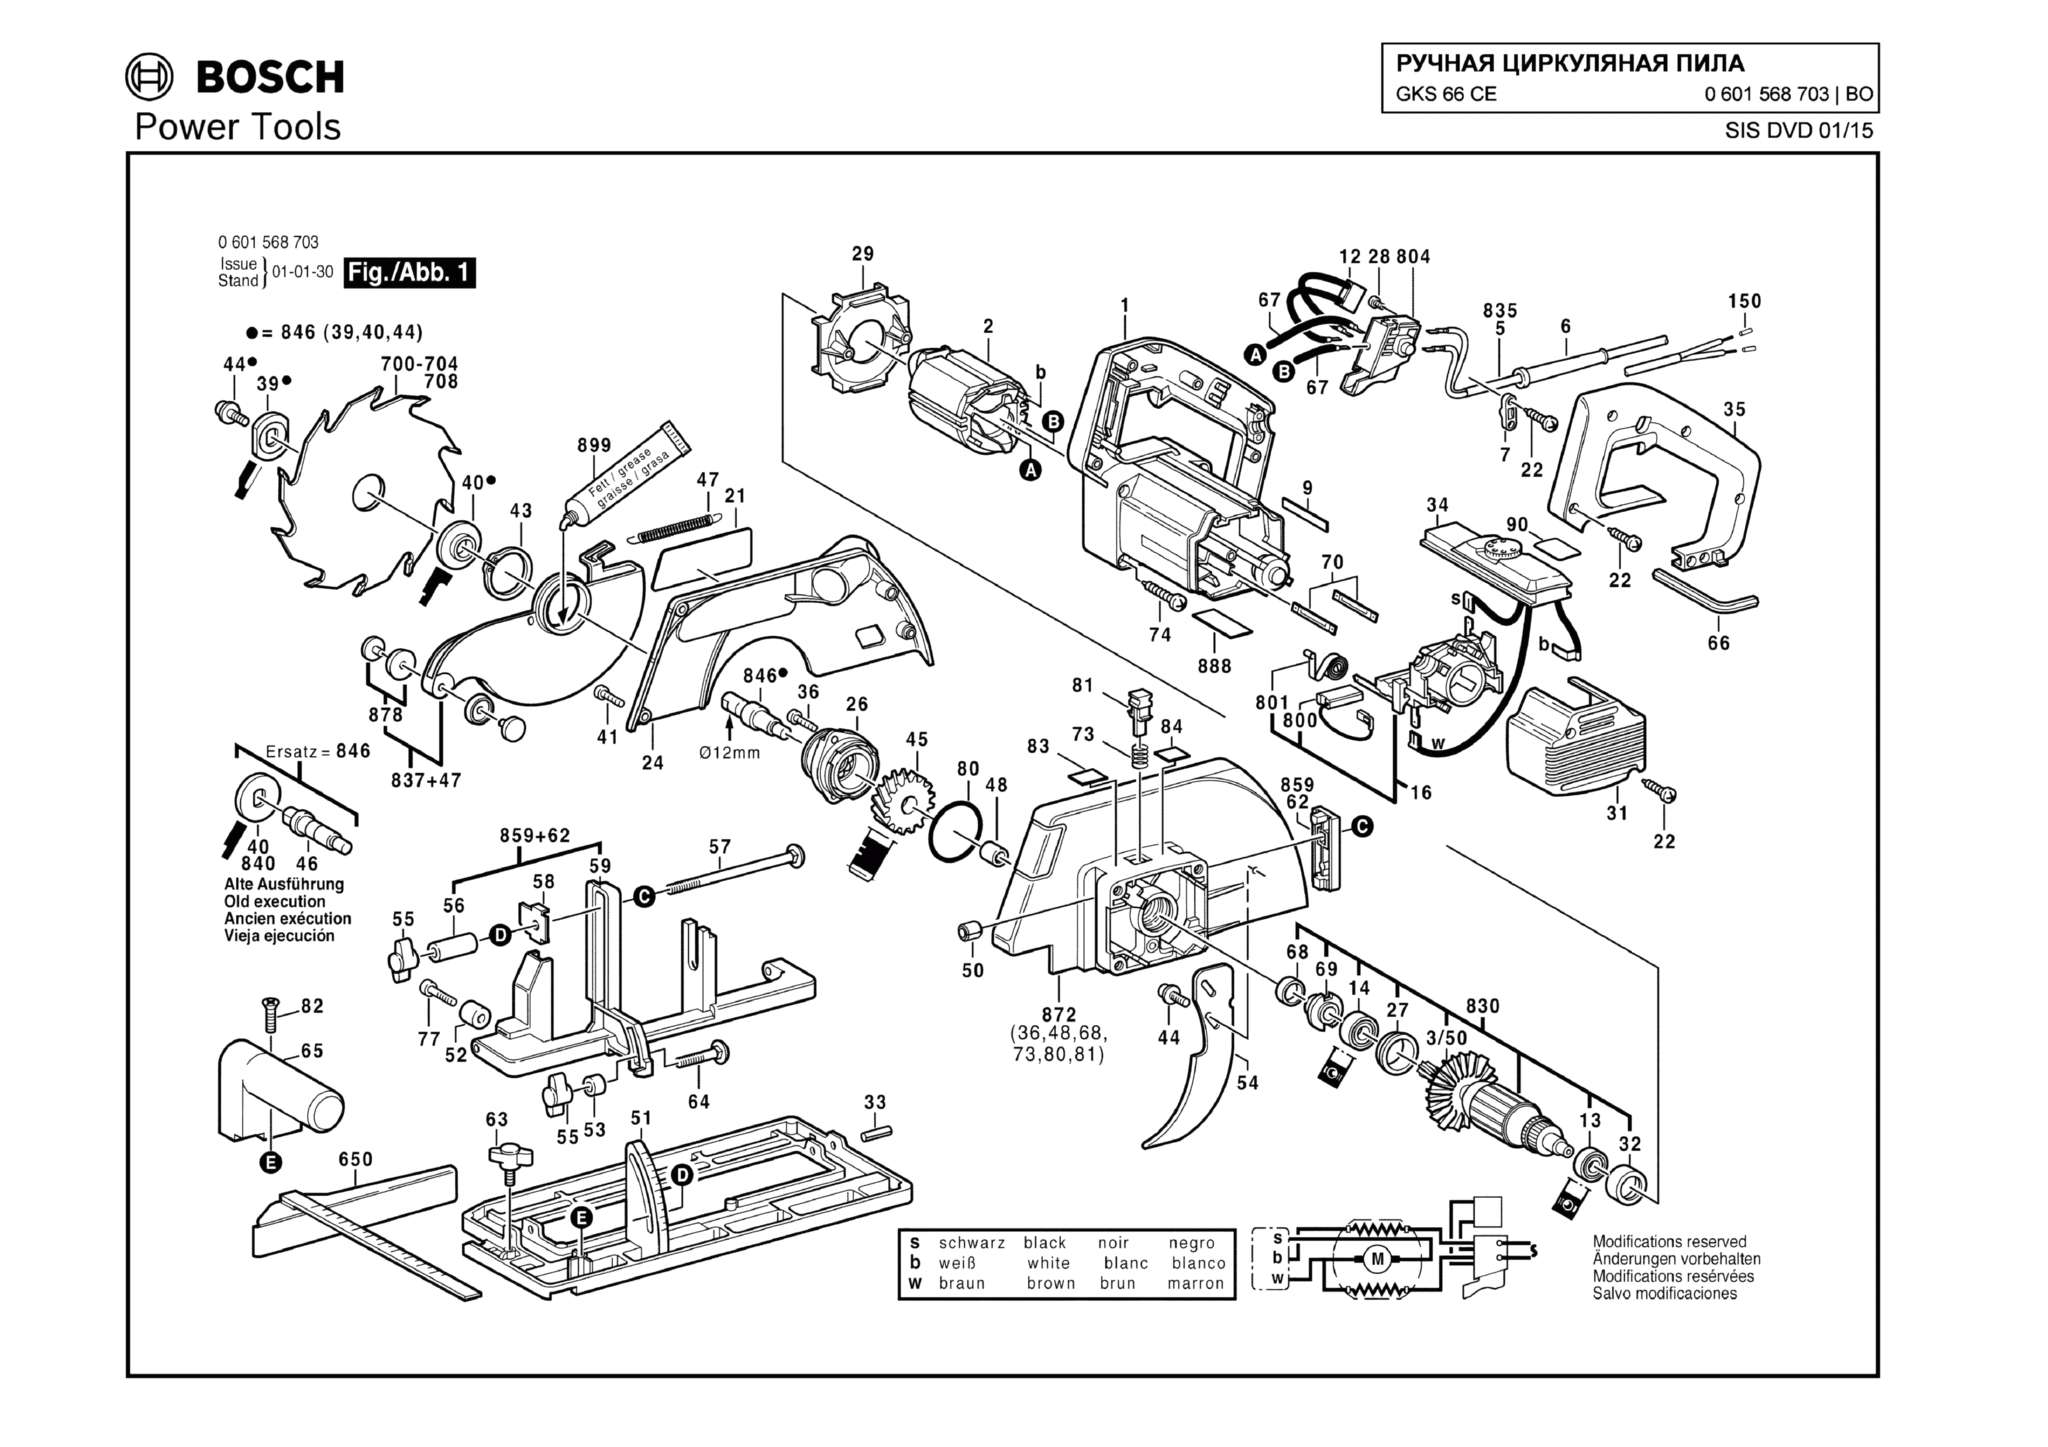 Запчасти, схема и деталировка Bosch GKS 66 CE (ТИП 0601568703)